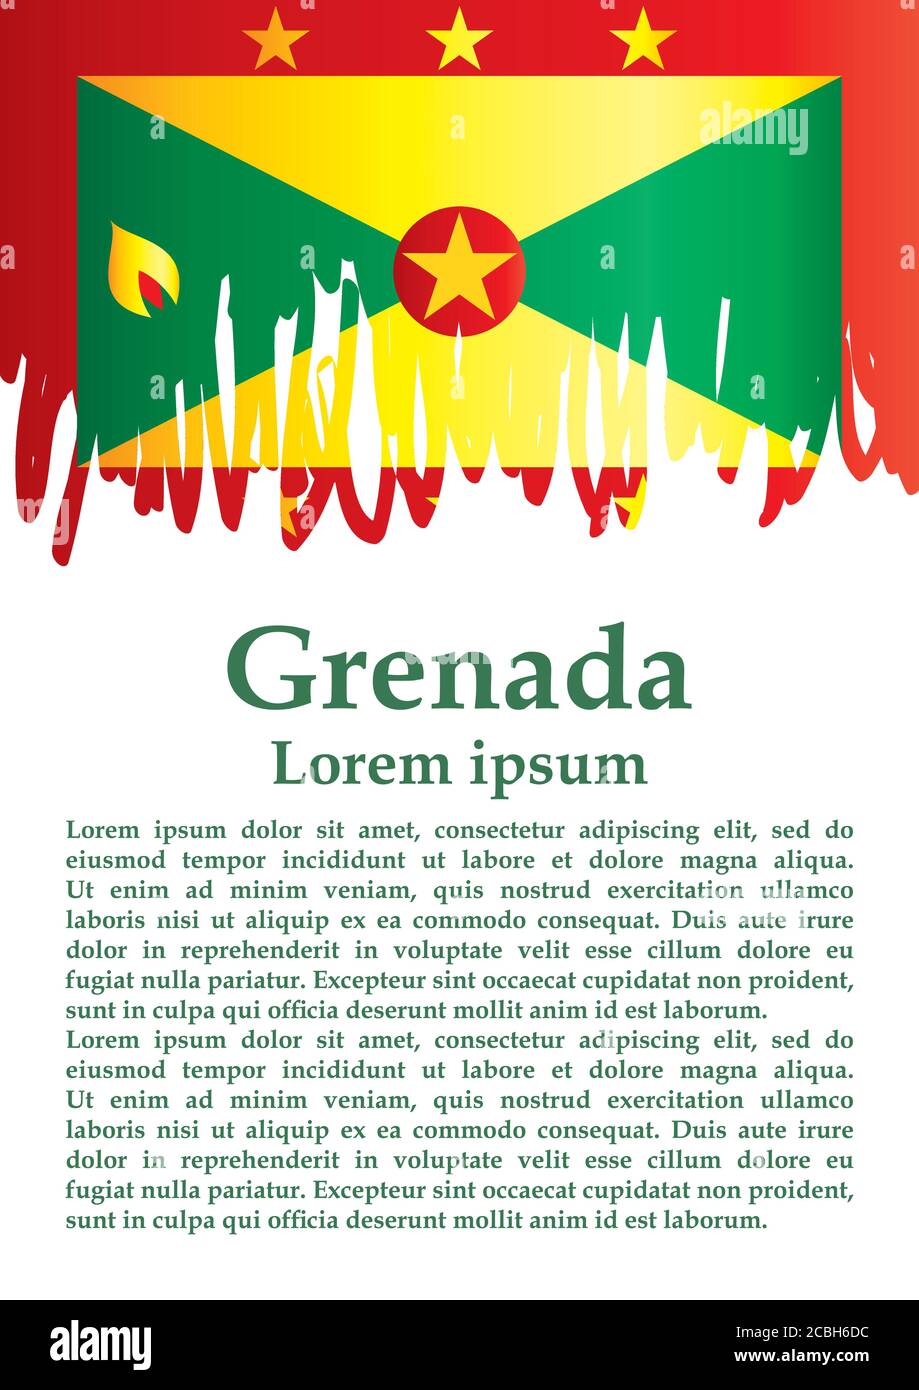 Bandera de Granada, Granada es un país en las Indias Occidentales, Isla de las Especias. Plantilla para el diseño de premios, un documento oficial con la bandera de Granada. Ilustración del Vector